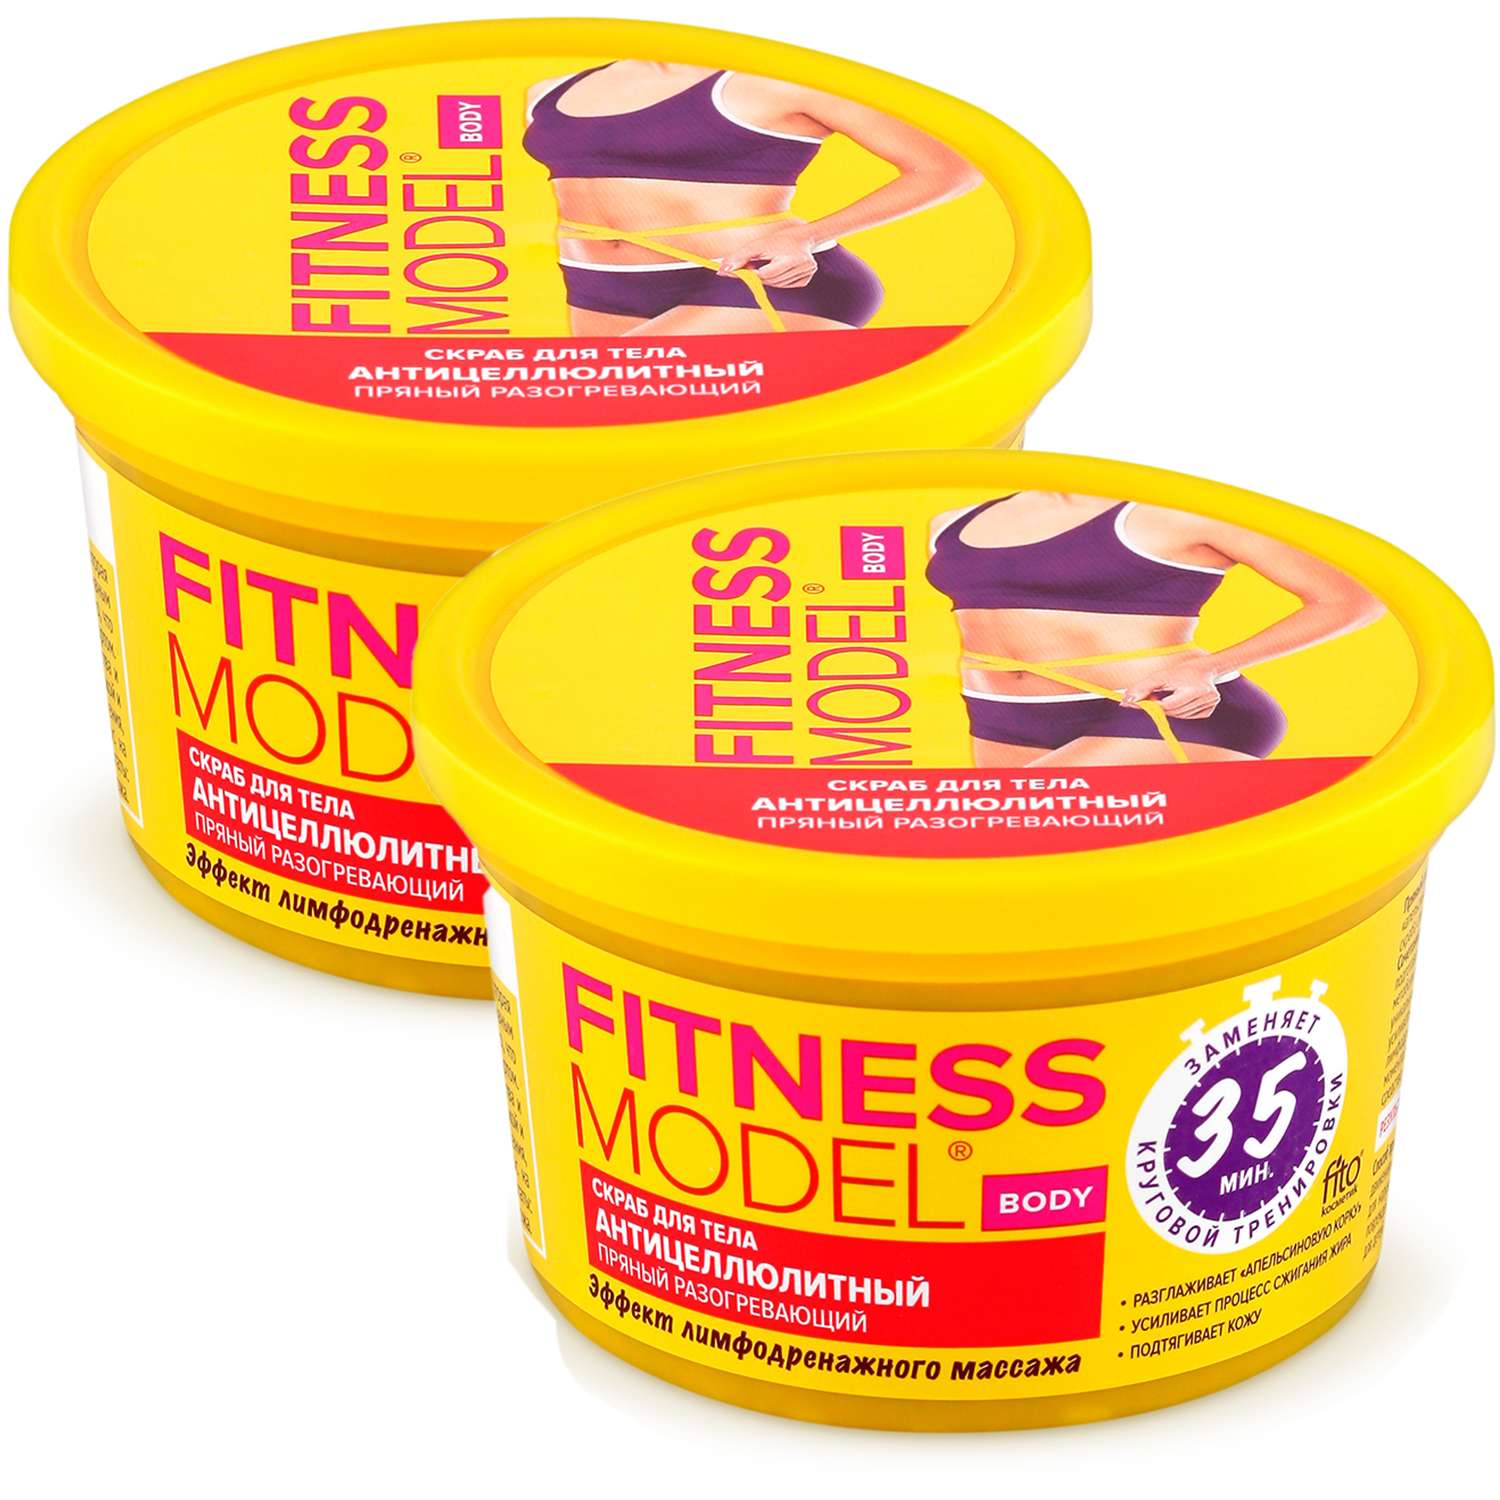 Скраб для тела fito косметик серии «Fitness Model» антицеллюлитный пряный разогревающий 250мл 2 шт - фото 1